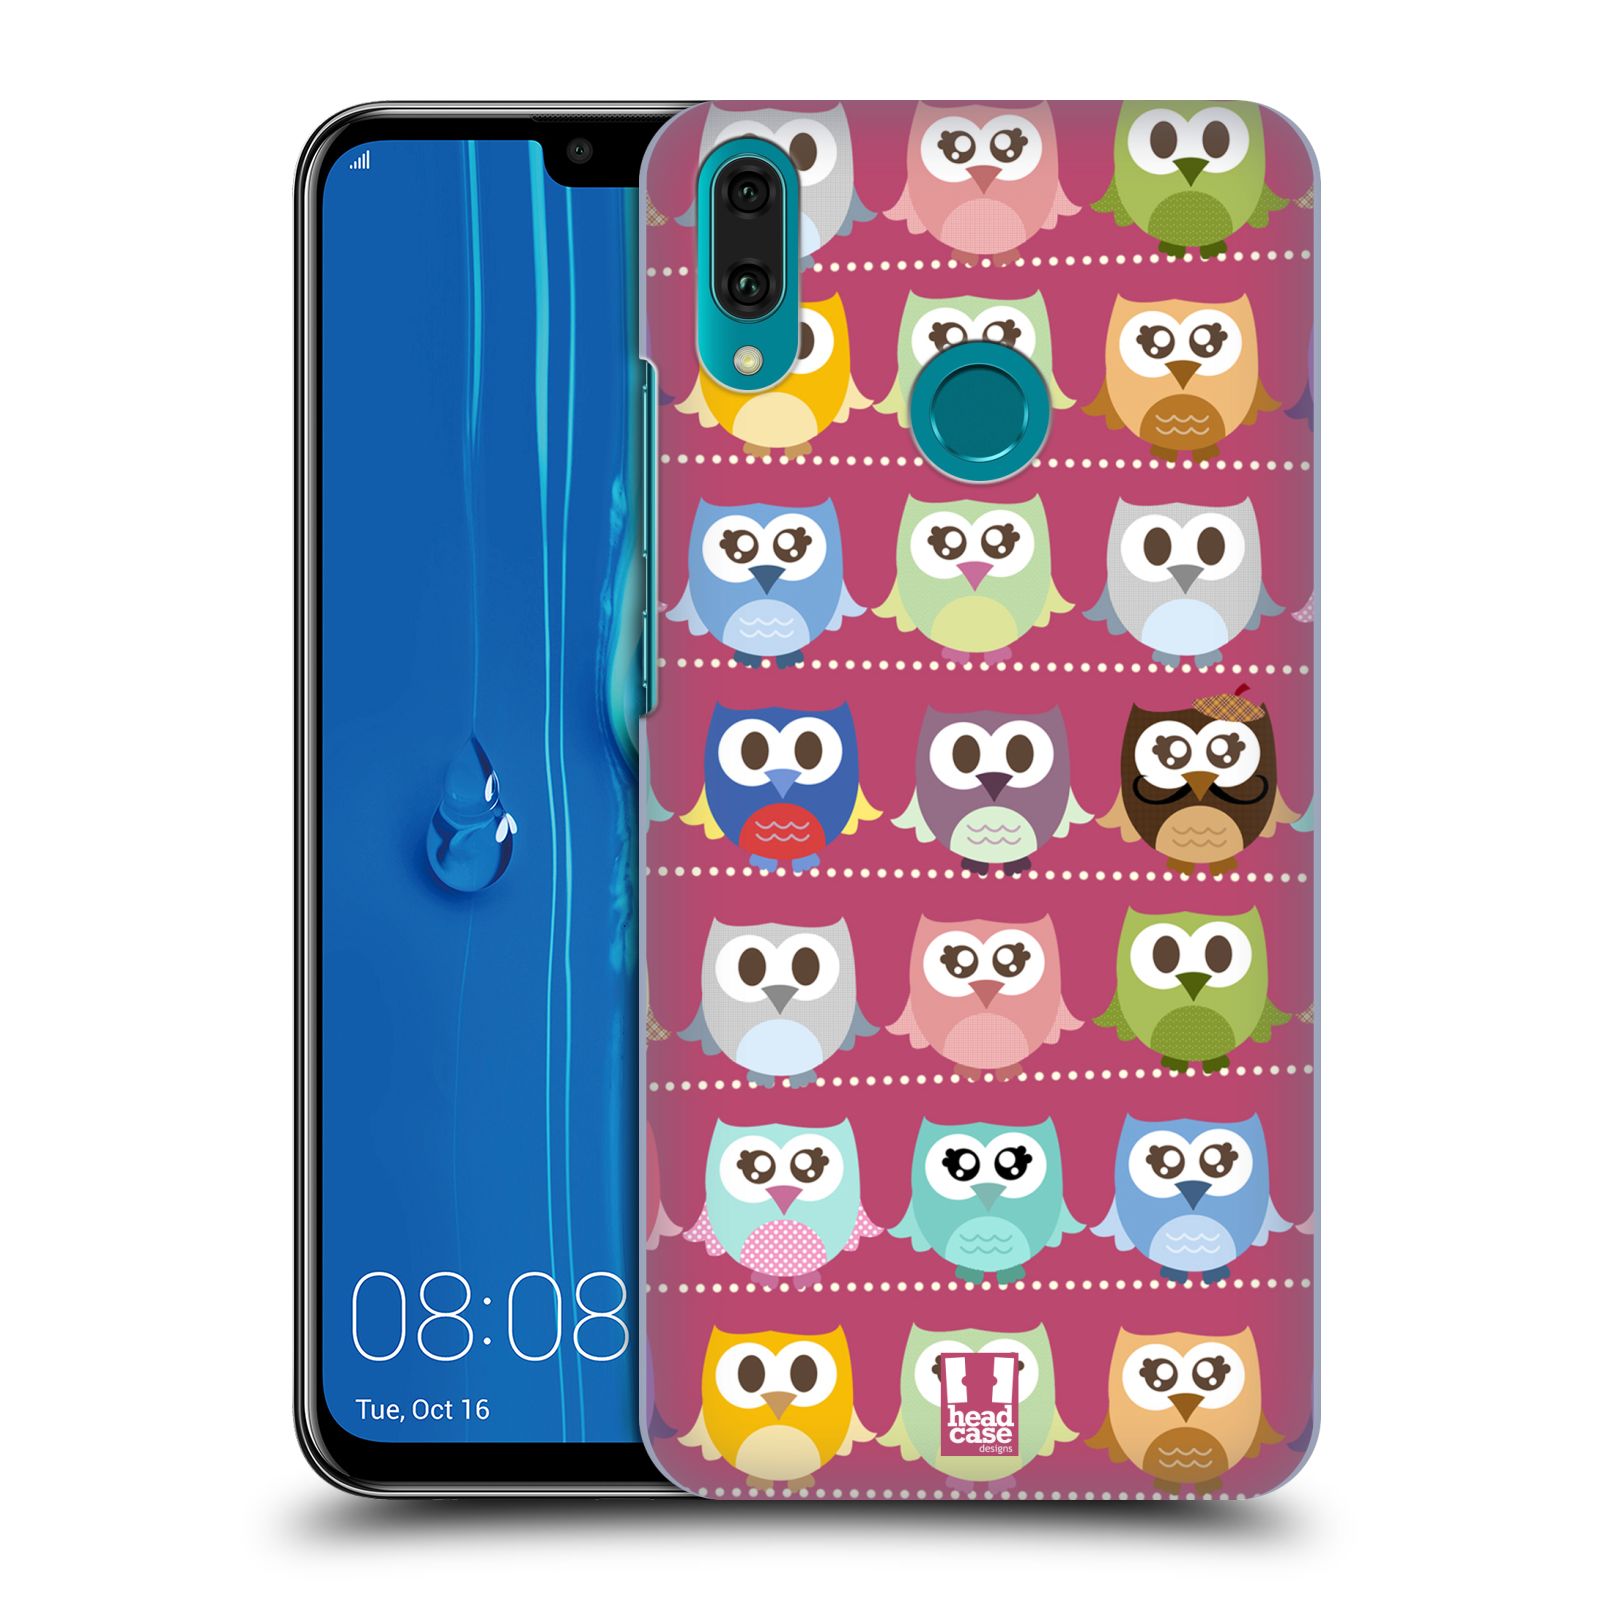 Pouzdro na mobil Huawei Y9 2019 - HEAD CASE - vzor Roztomilá sovička růžové sovičky